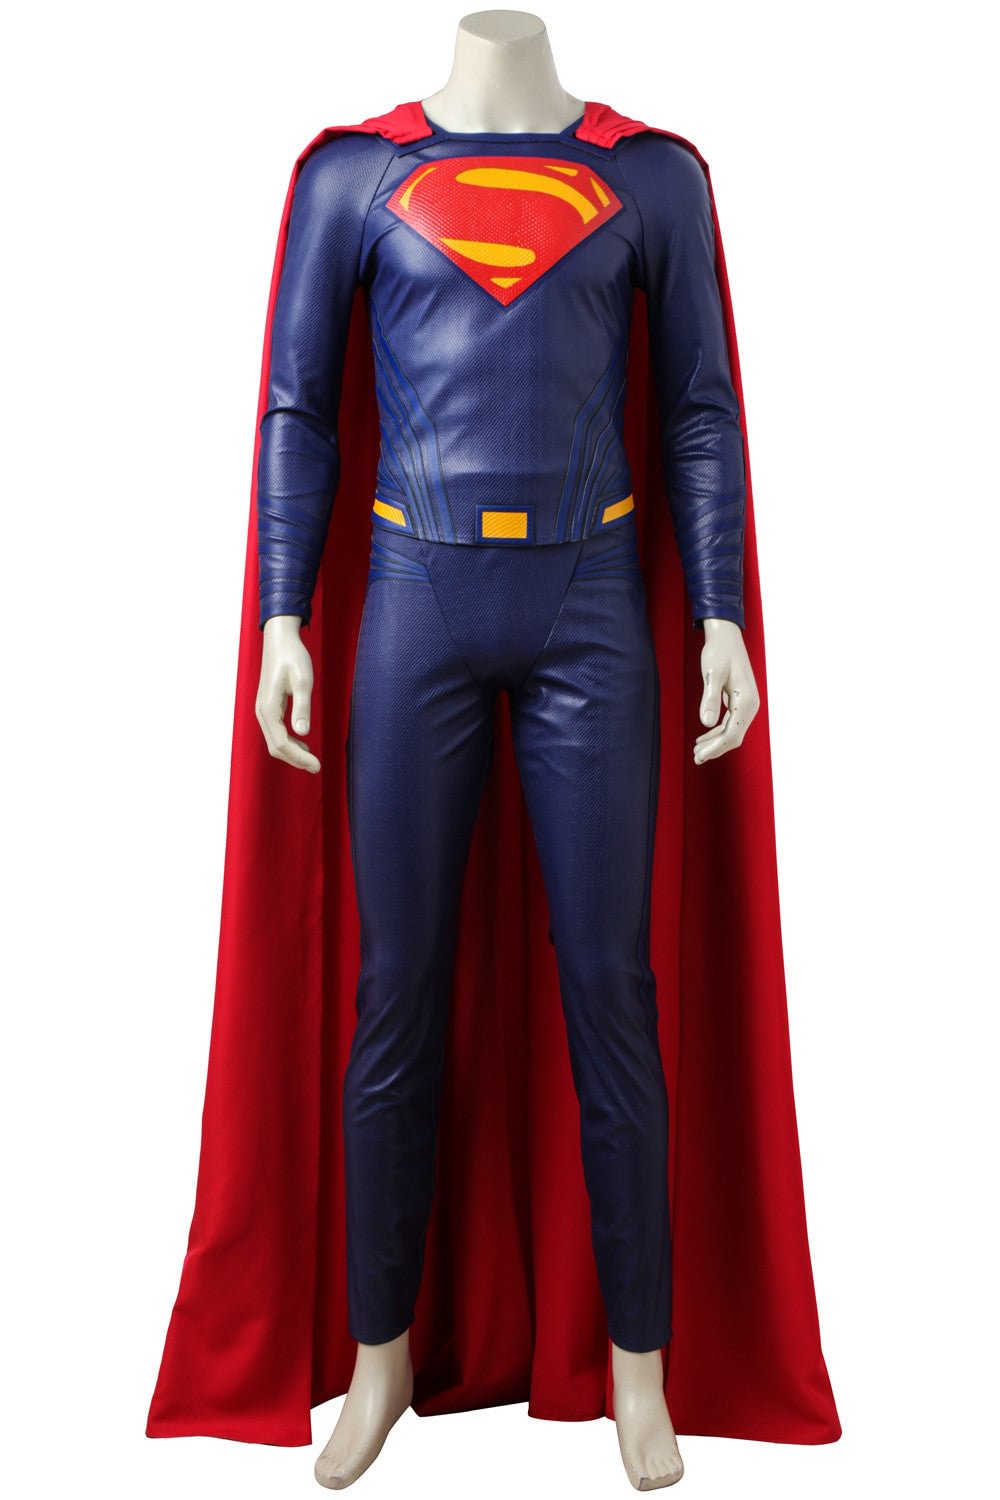 Justice League Superman Clark Joseph Kent cosplay costume